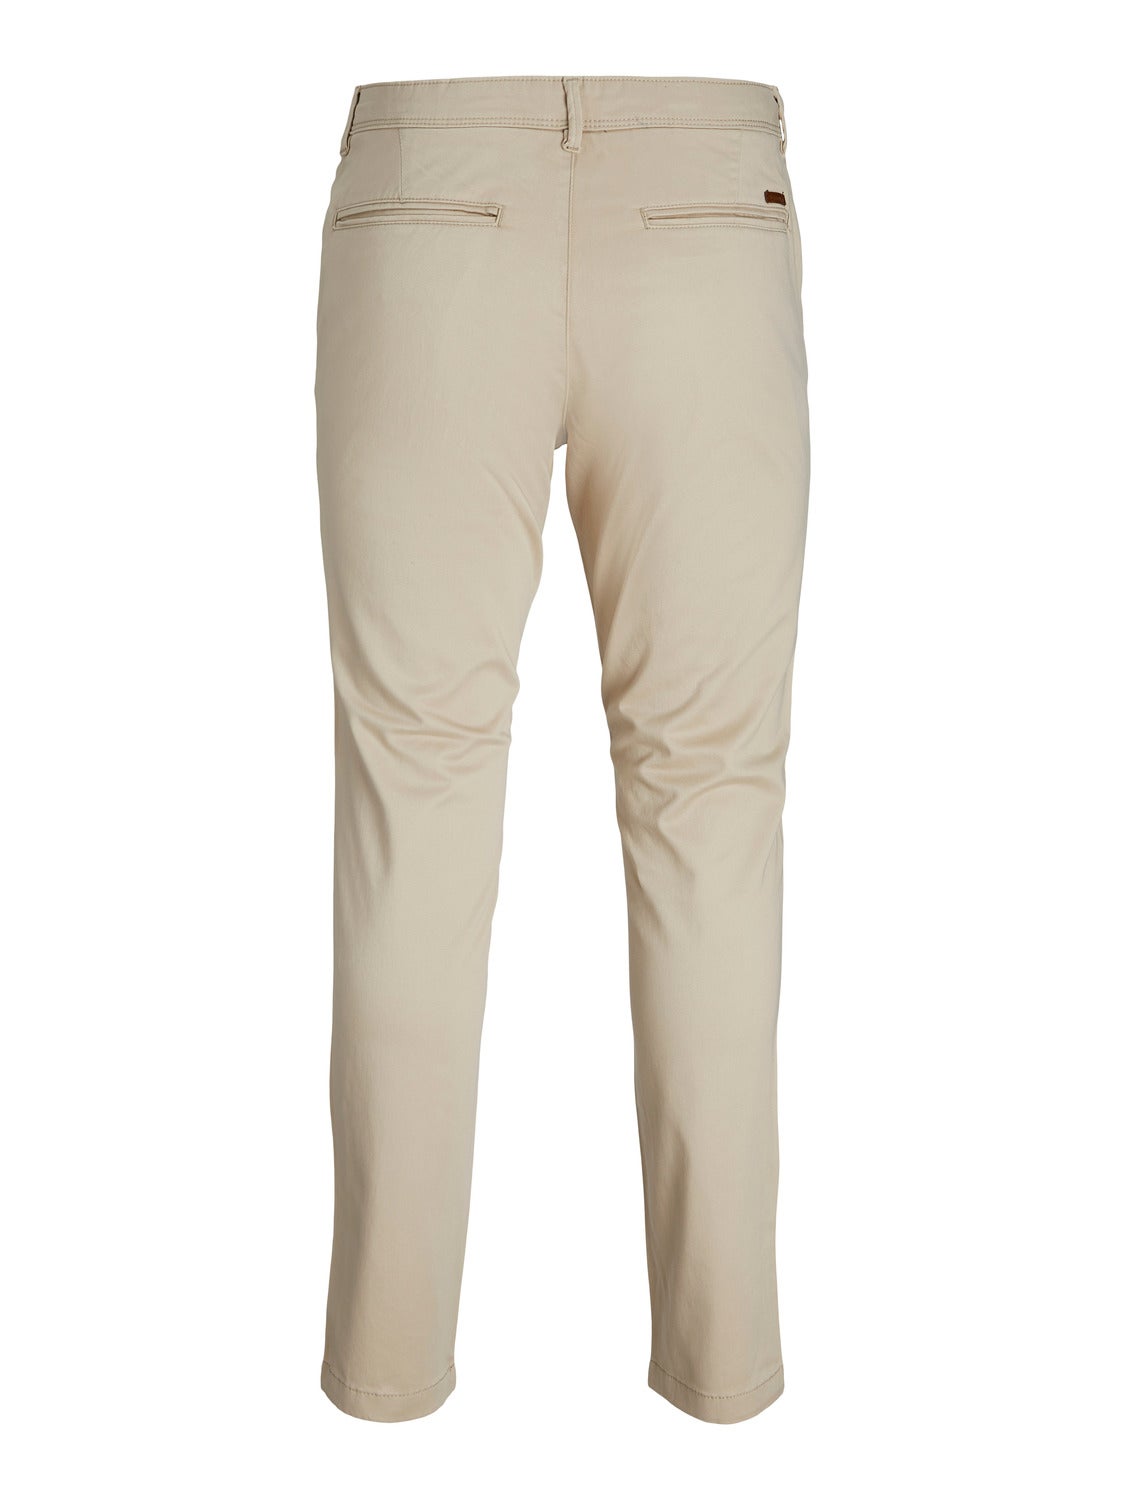 Pantalon chino slim beige homme - BOUTIQUE CAPRICES